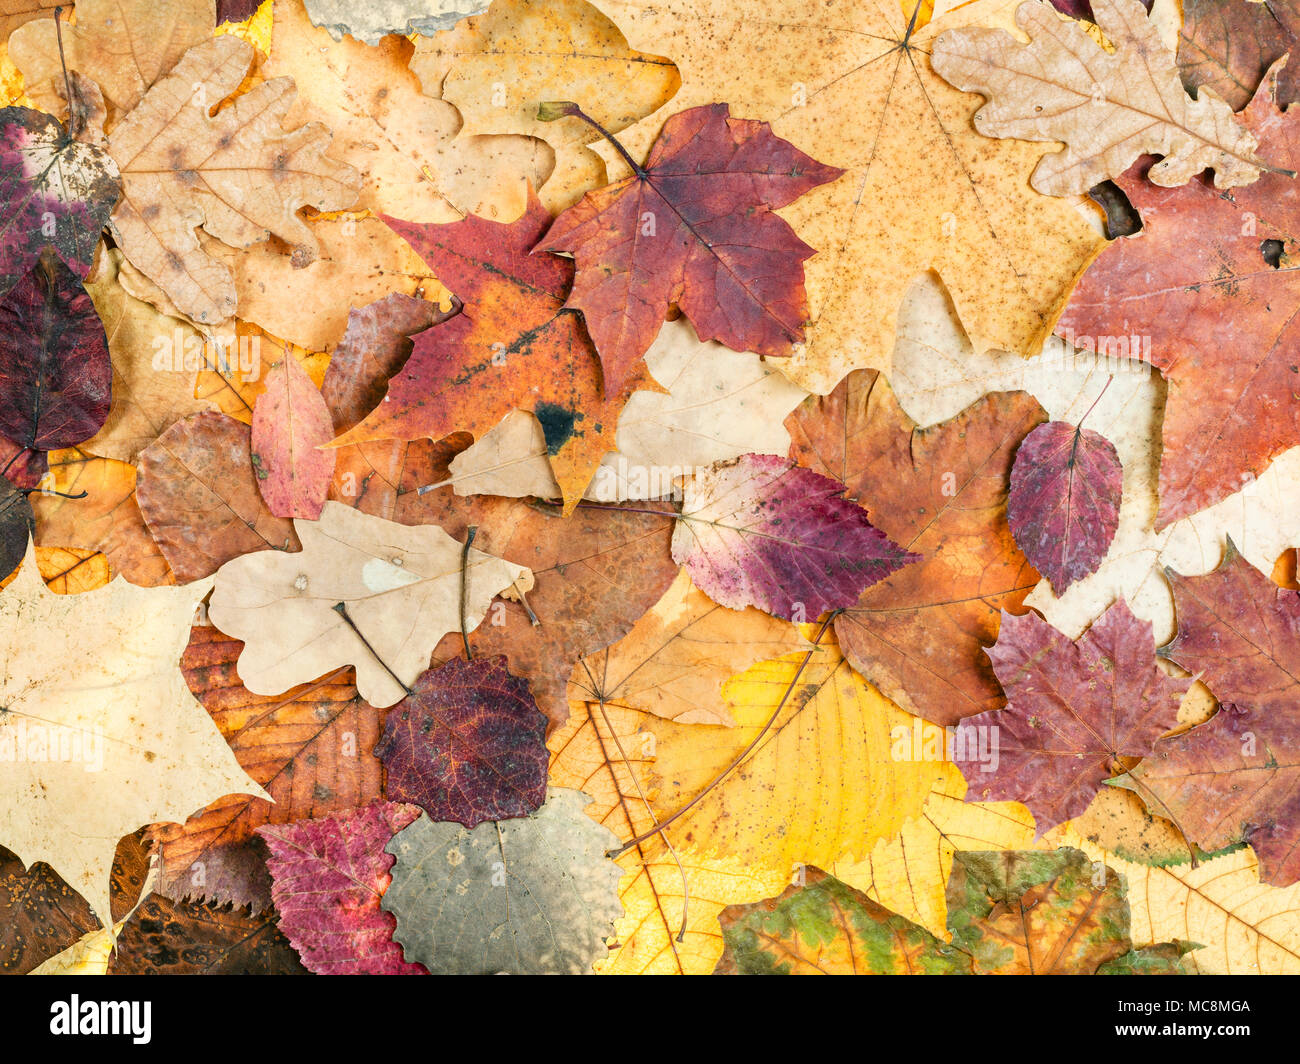 Natürliche Herbst Hintergrund aus verschiedenen bunten Blätter von Eichen, Ahorn, Erle, Malus, Aspen Bäume Stockfoto